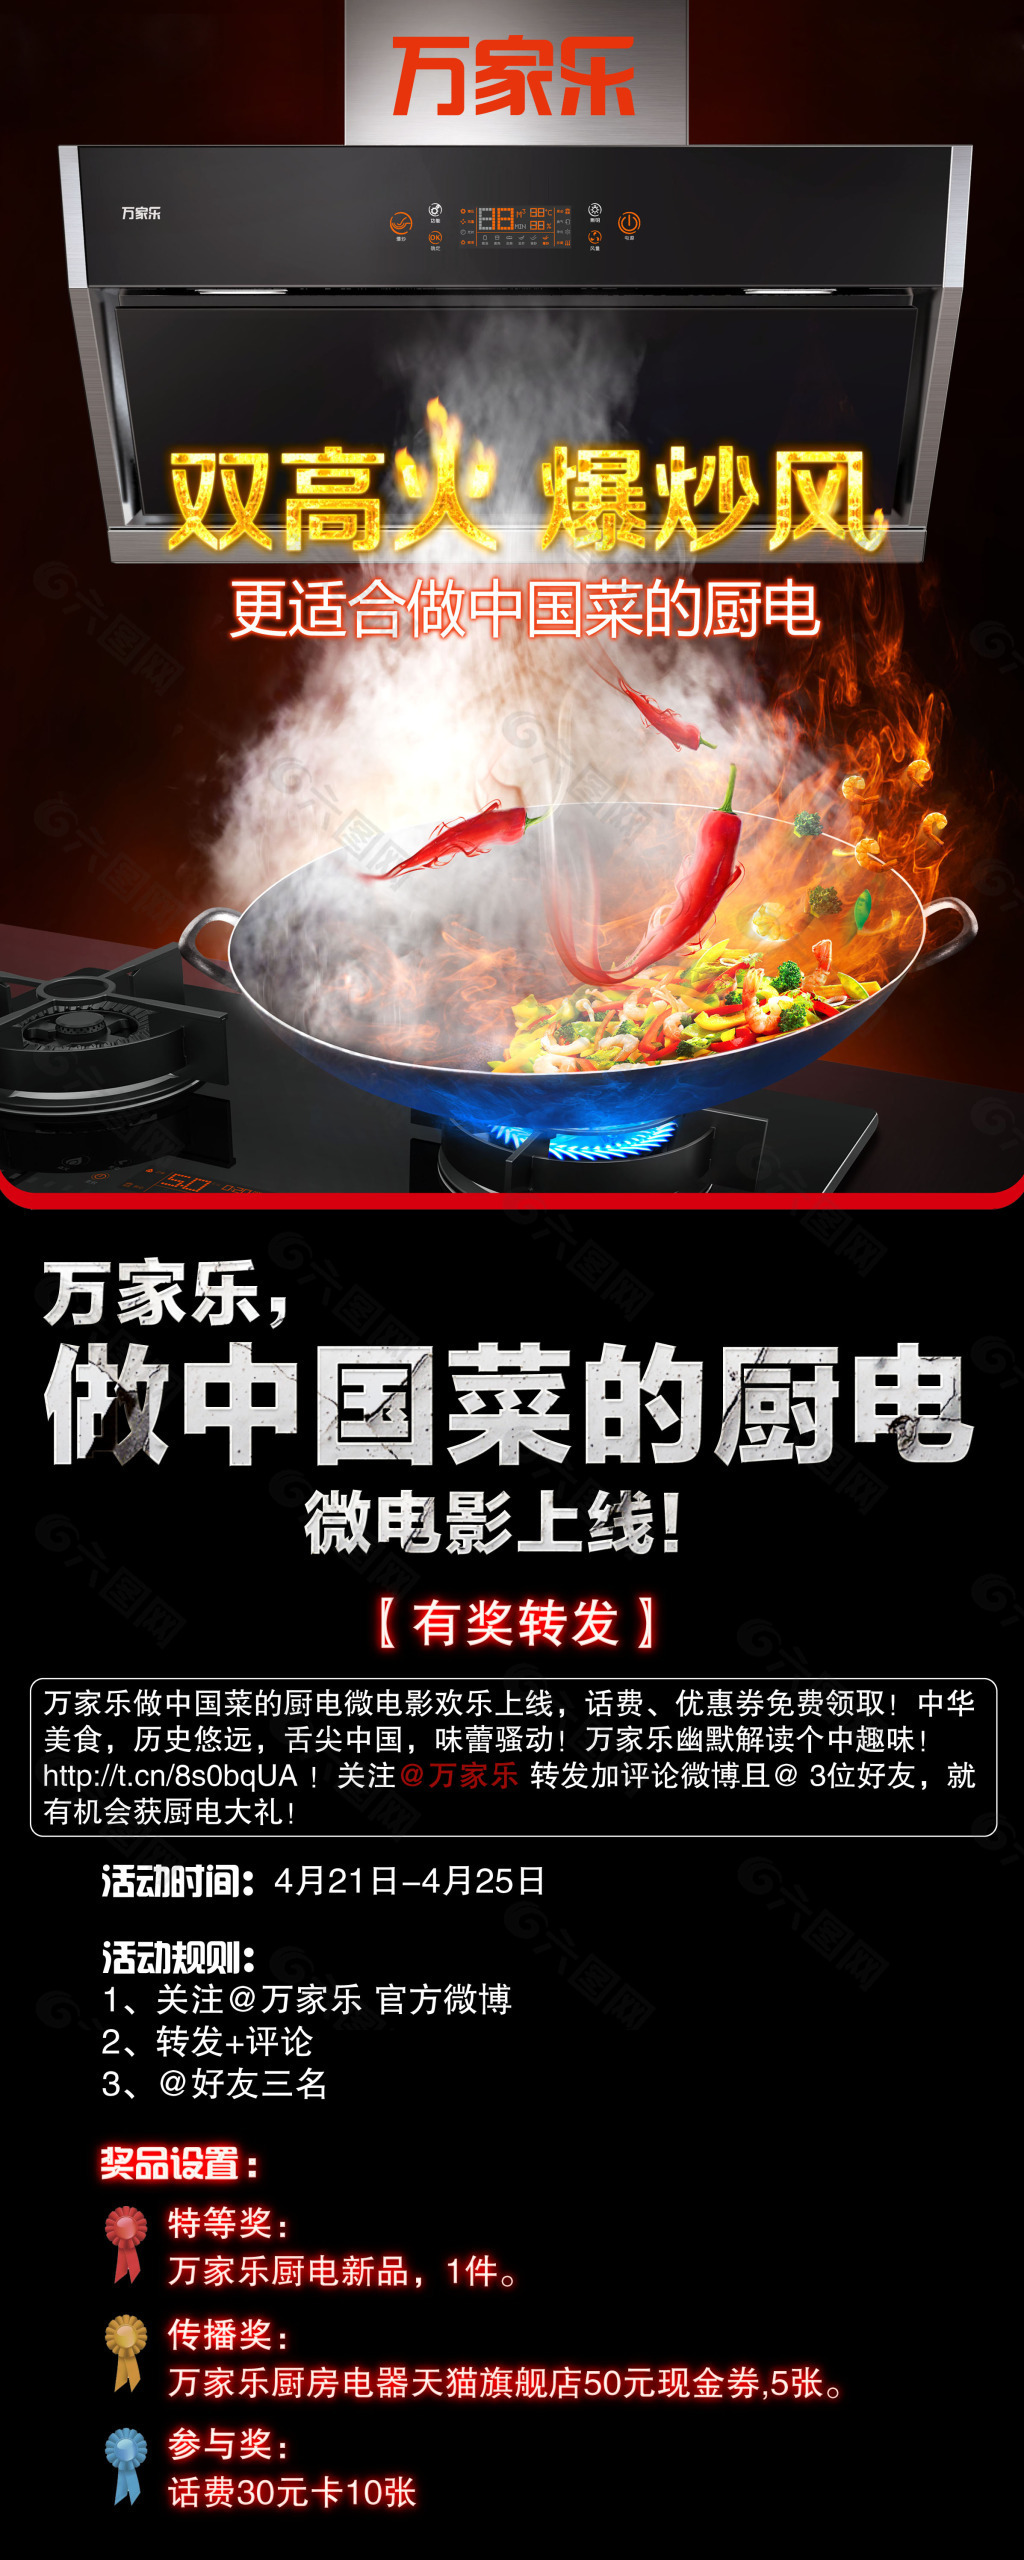 厨电微博活动海报